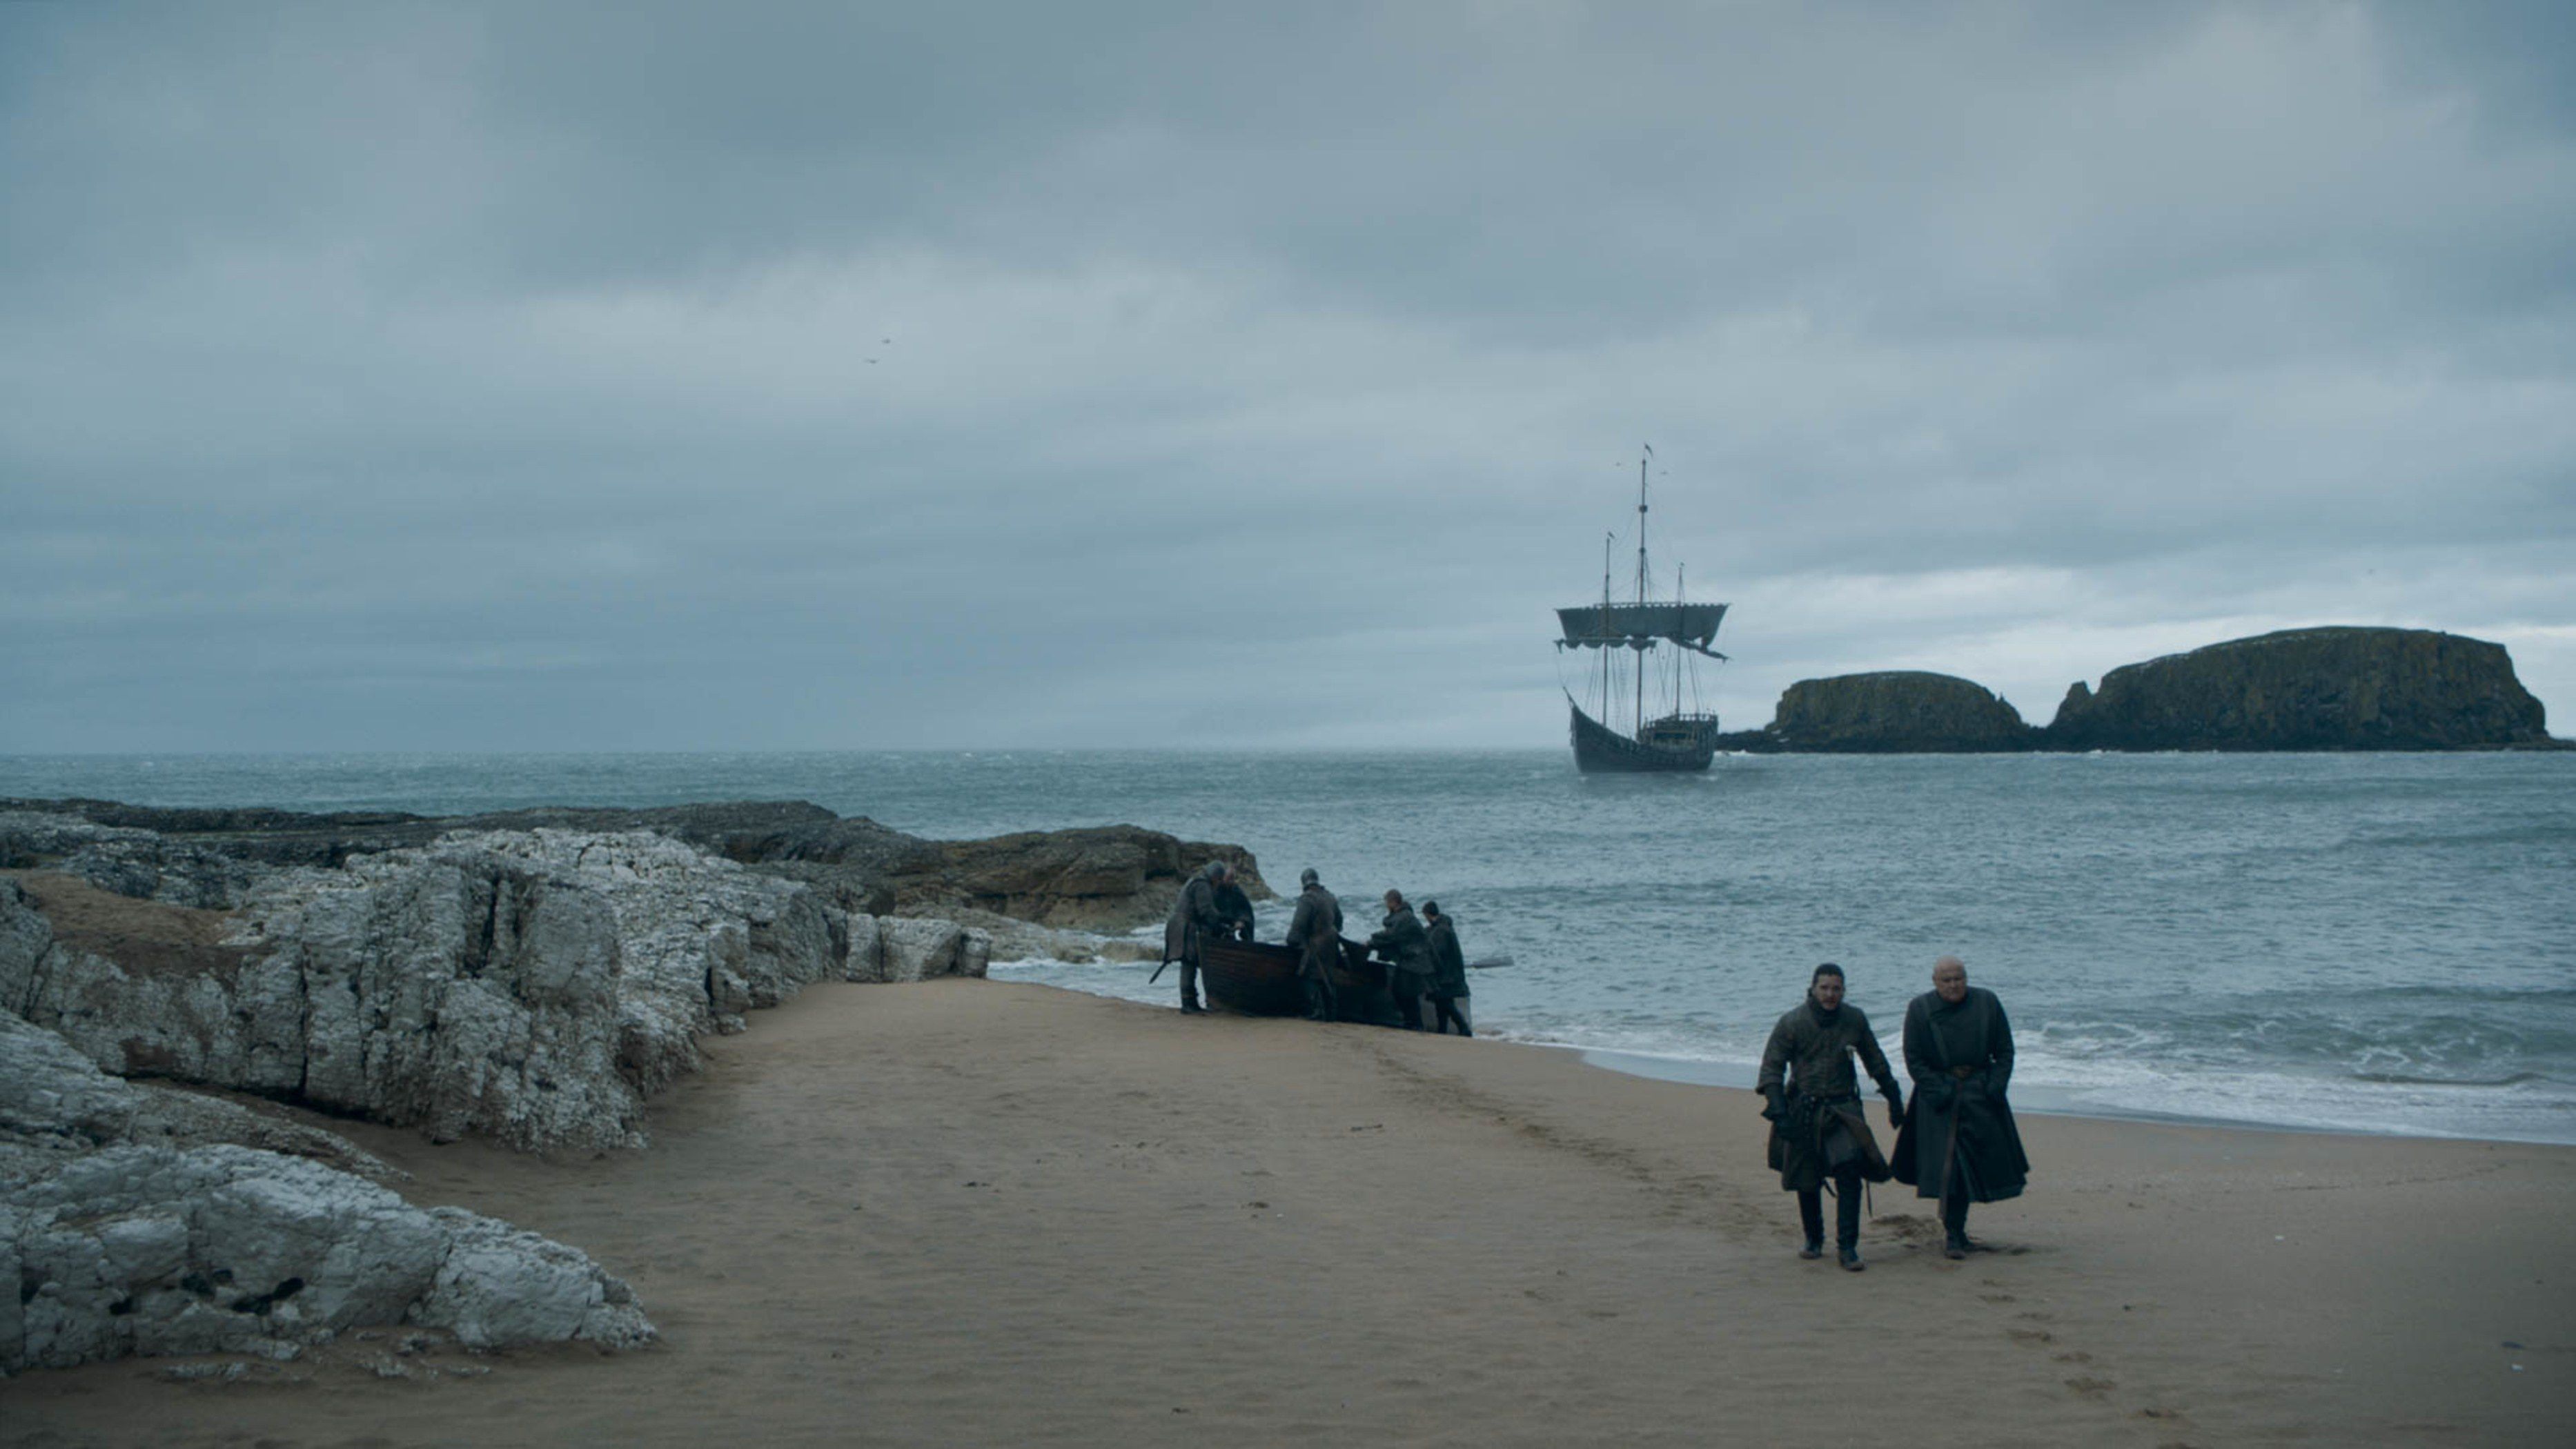 Game of Thrones Season 8 Episode 5 Images Tease War In King’s Landing